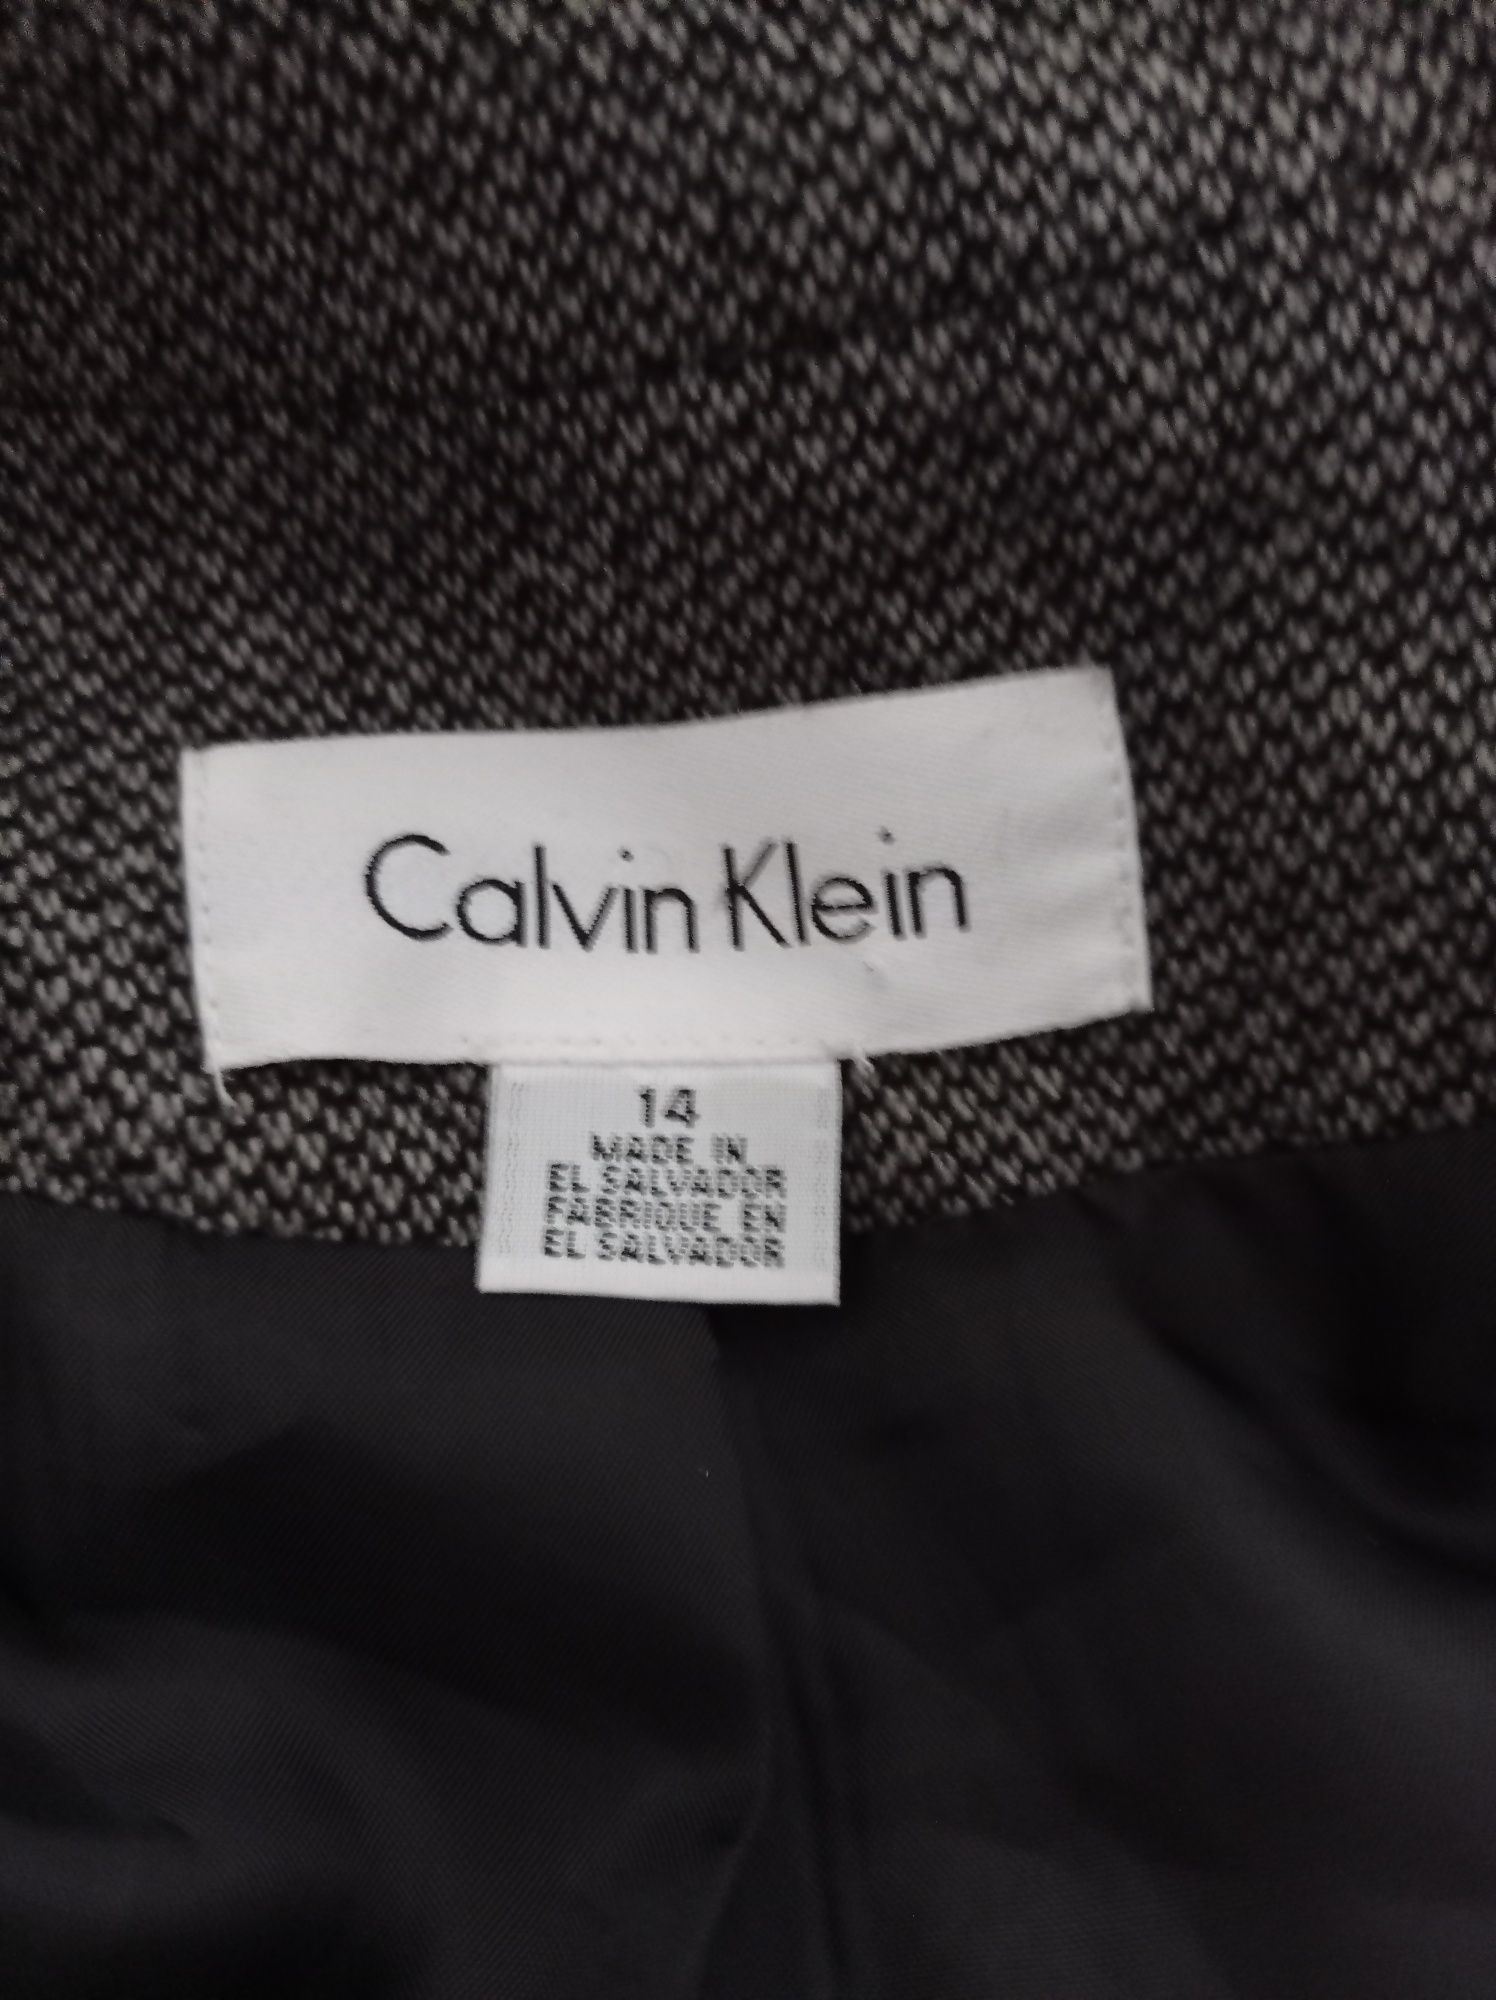 Żakiet damski rozmiar 44 Calvin Klein welna